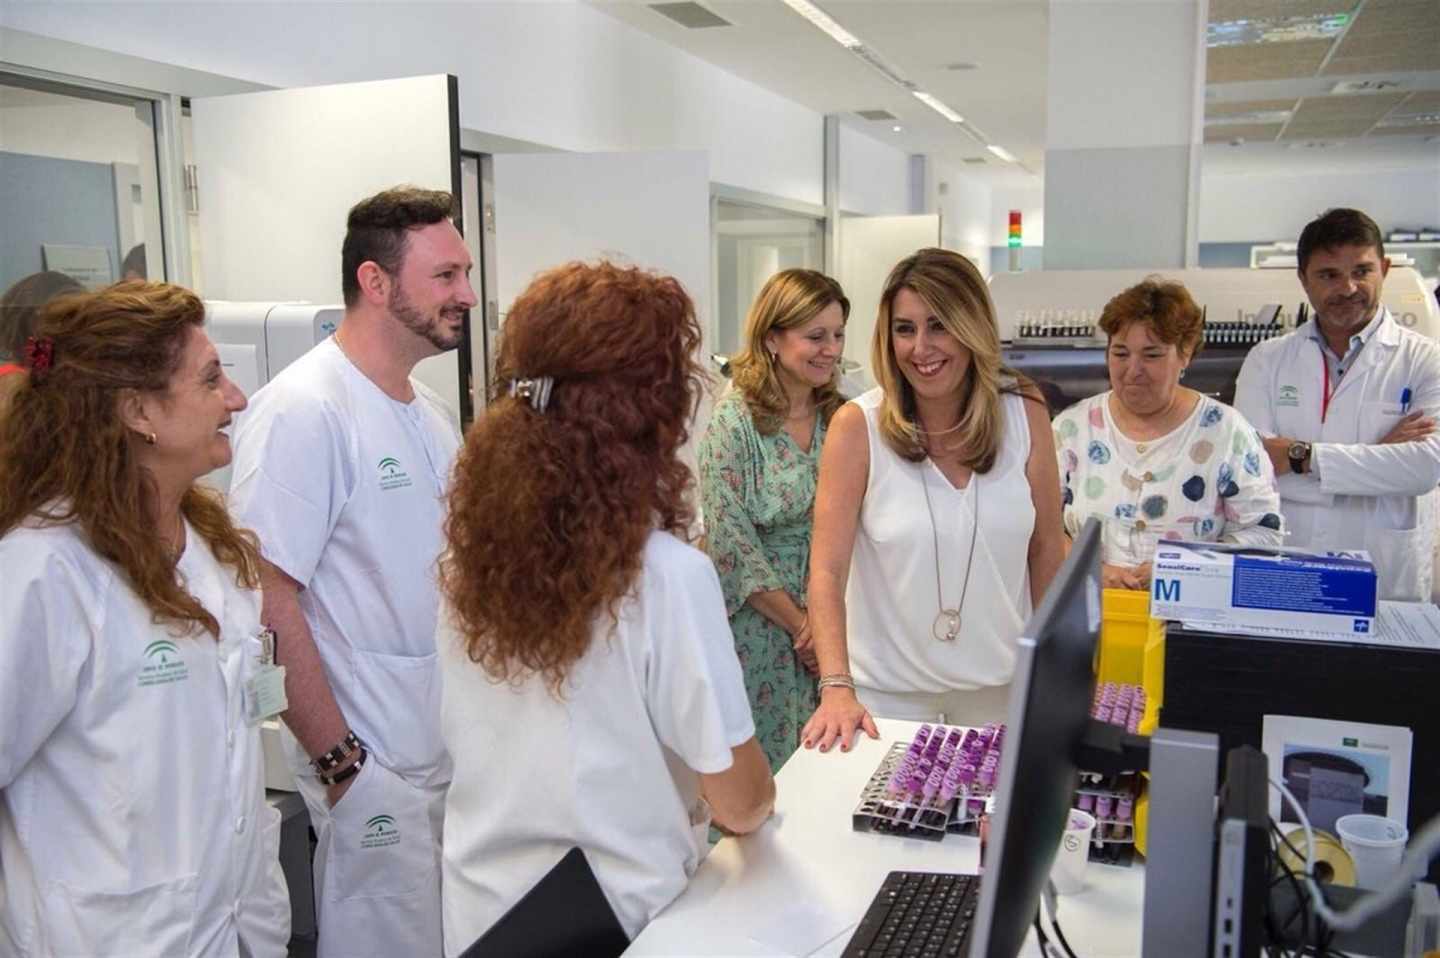 Díaz anuncia que la televisión en las habitaciones de los hospitales públicos andaluces será gratis